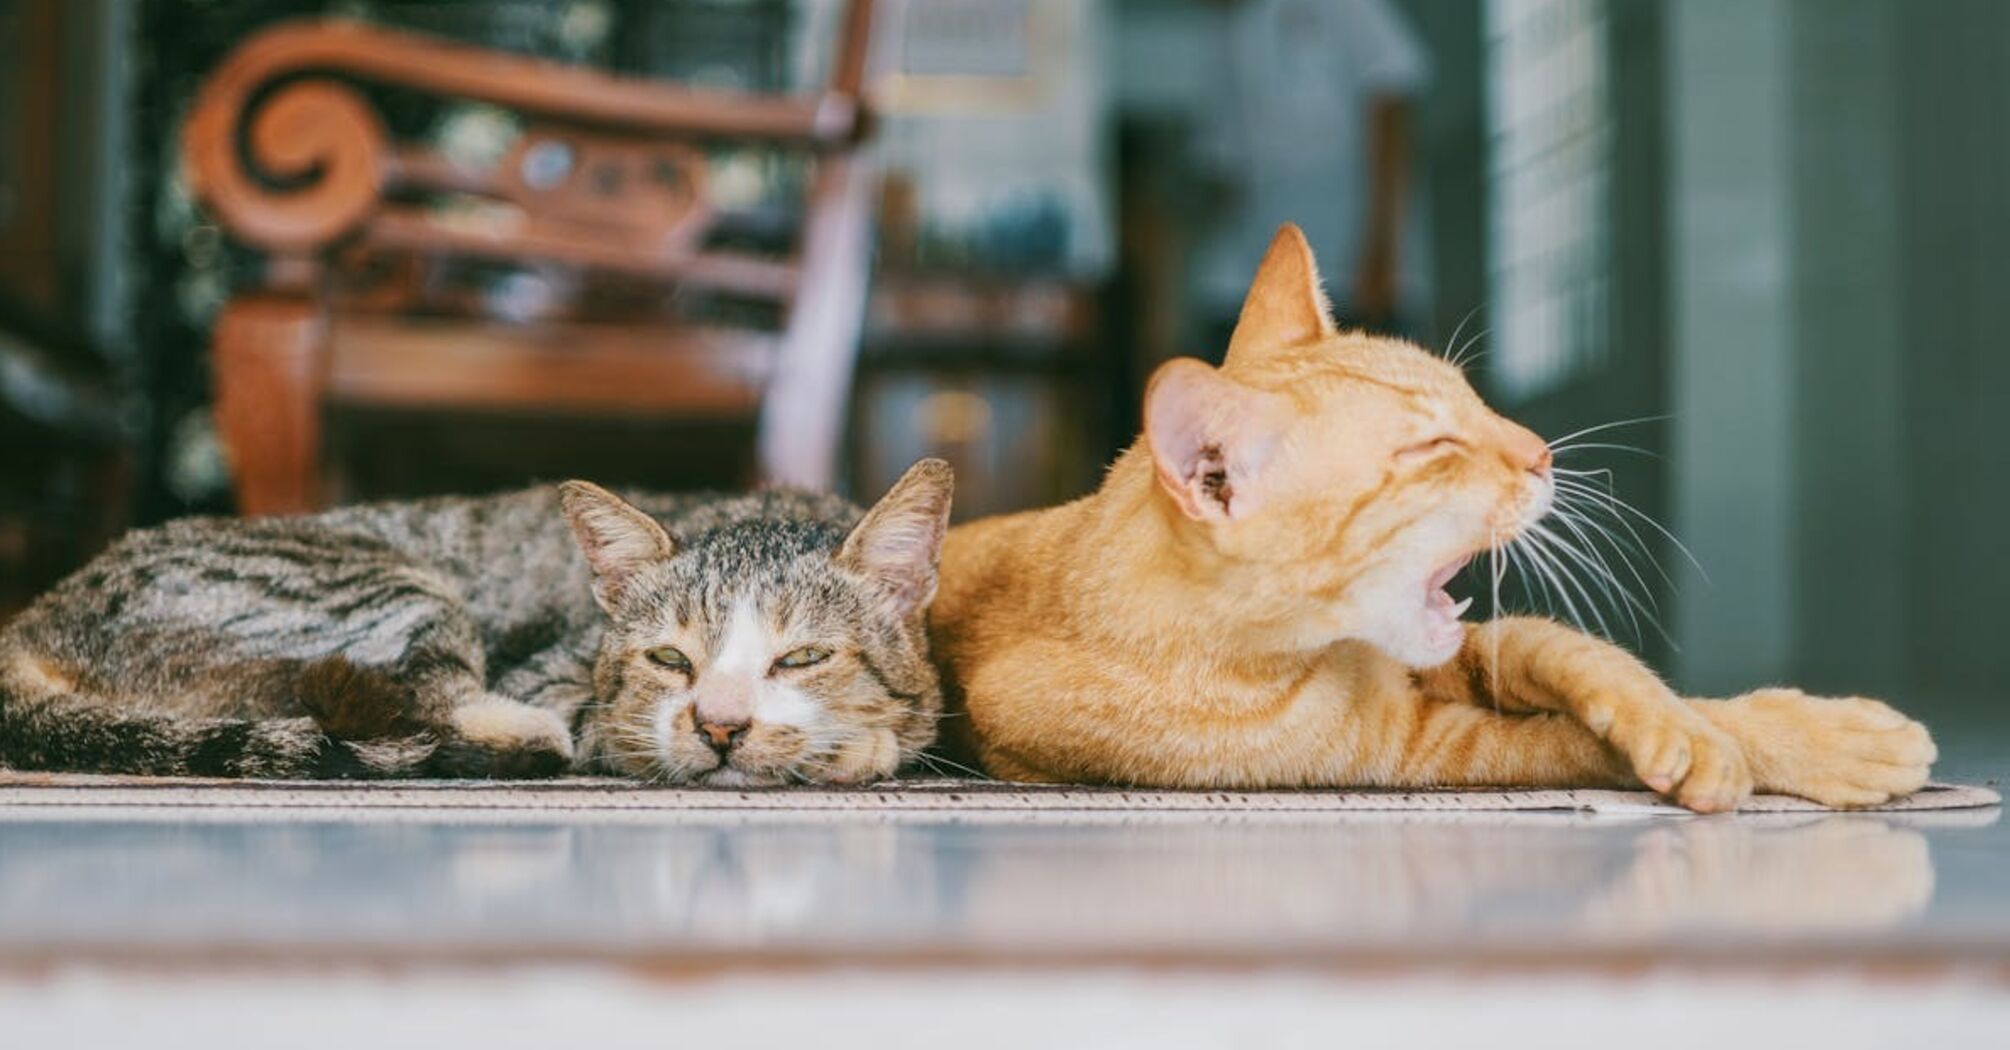 Правда ли, что рыжие коты 'тупые': ученые опровергли популярное утверждение